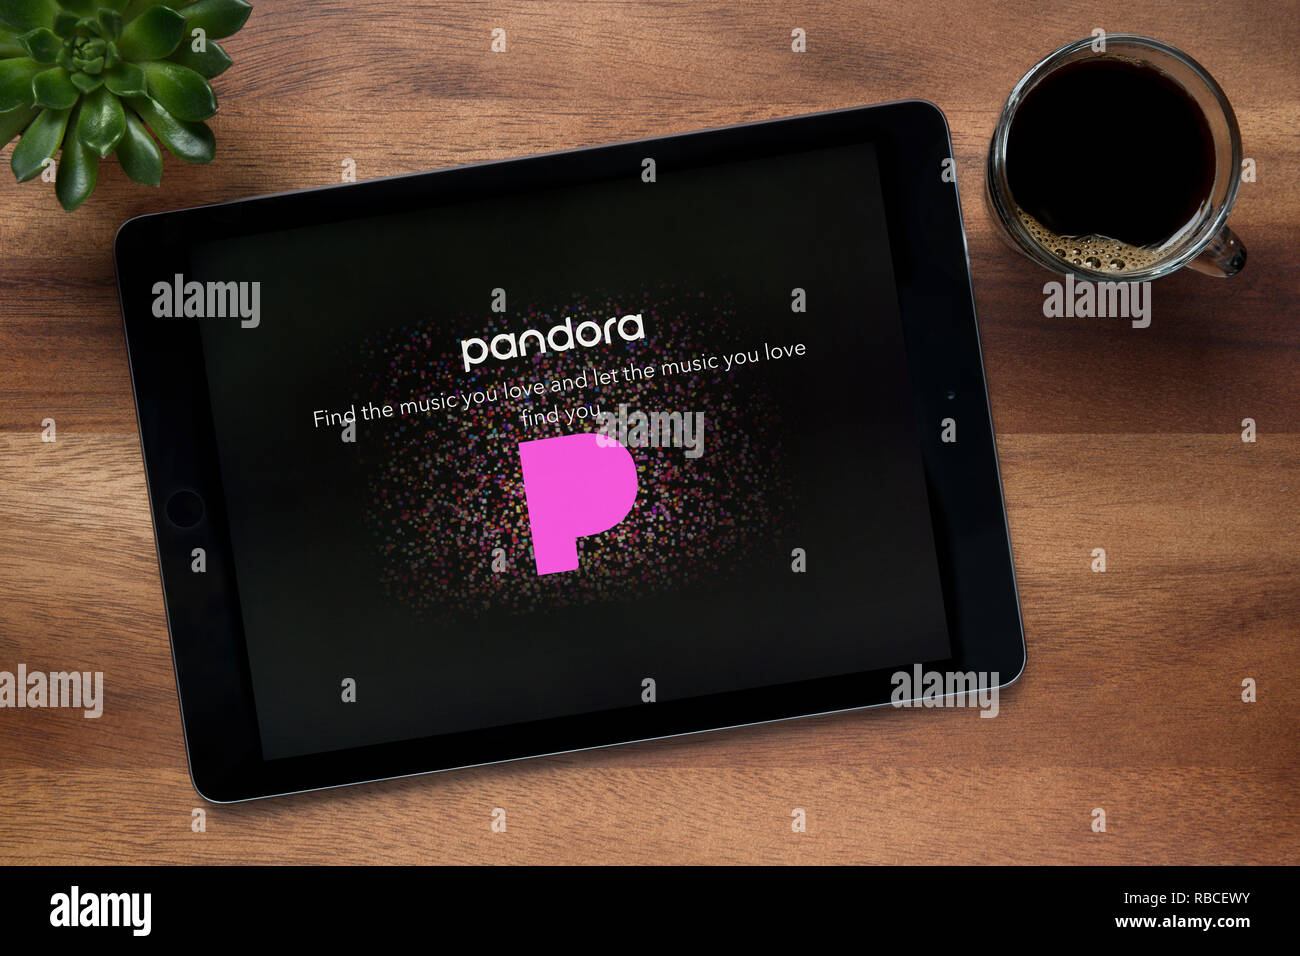 Le site internet de Pandora est vu sur une tablette iPad, sur une table en bois avec une machine à expresso et d'une plante (usage éditorial uniquement). Banque D'Images